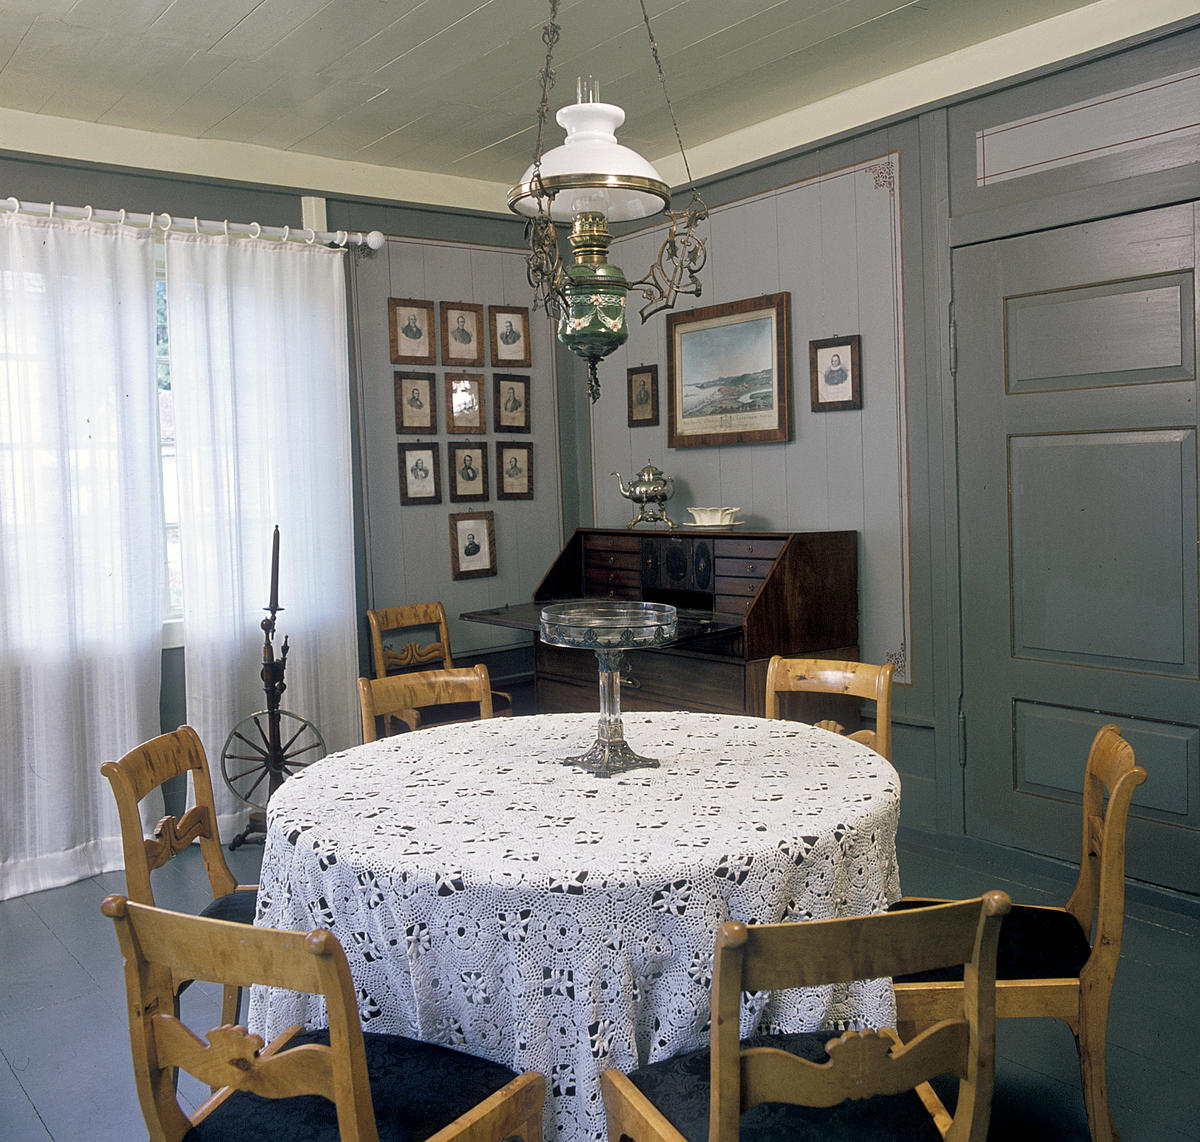 Interiør; rundt bord med hvit duk og stoler rundt i forgrunnen, husordel, mange fotografier på veggen og en oljelampe over bordet.